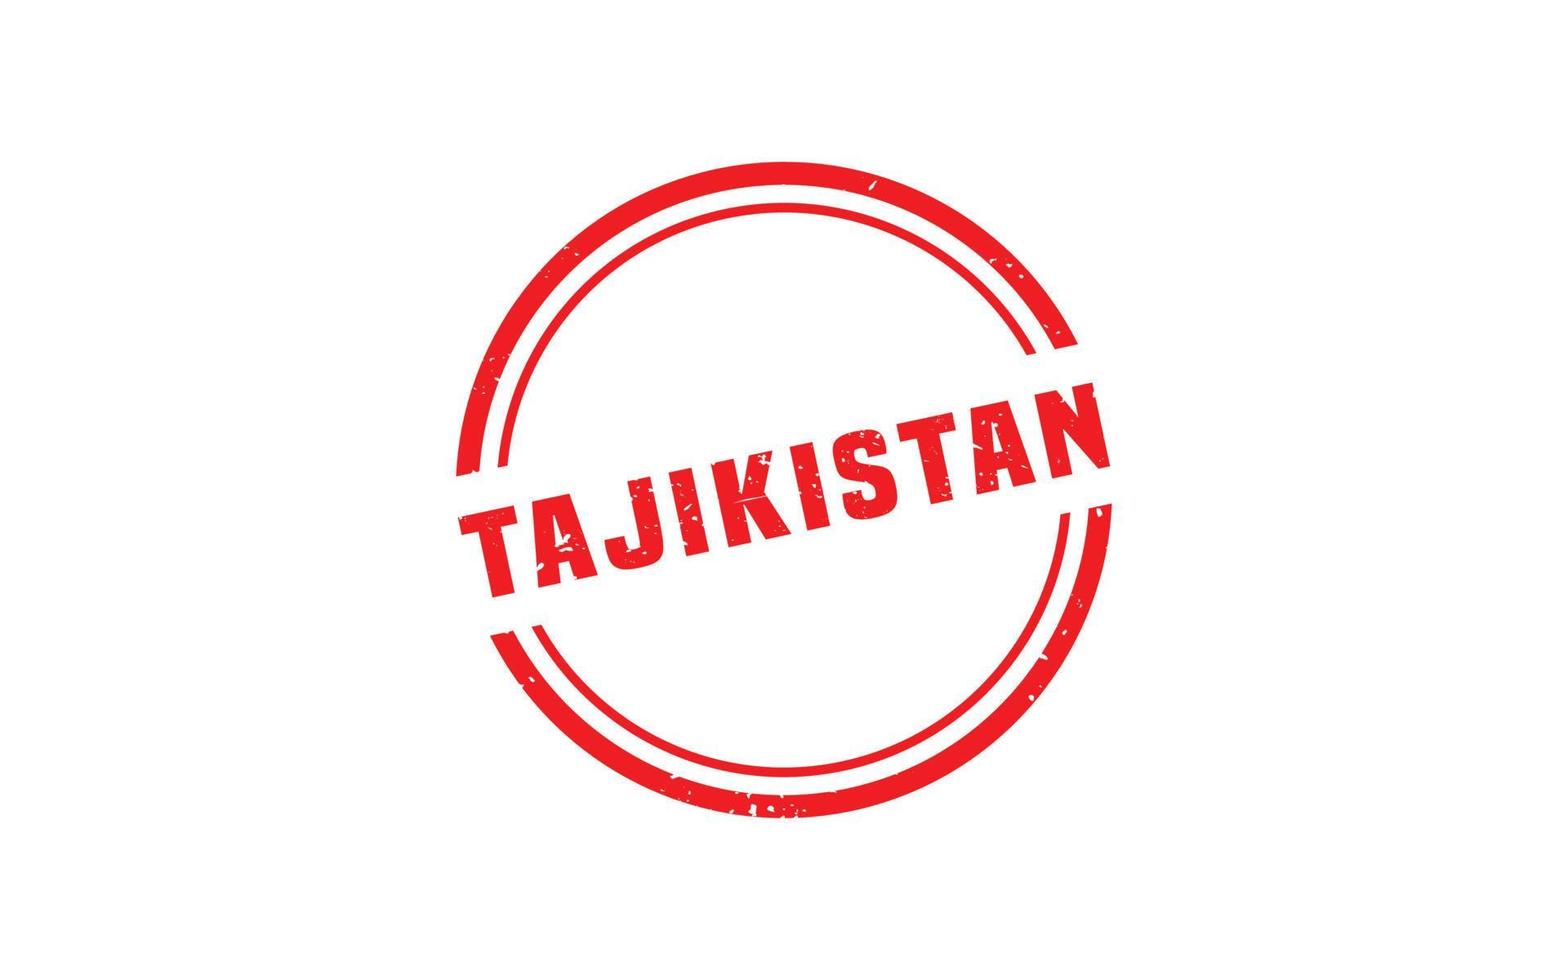 Tayikistán sello caucho con grunge estilo en blanco antecedentes vector